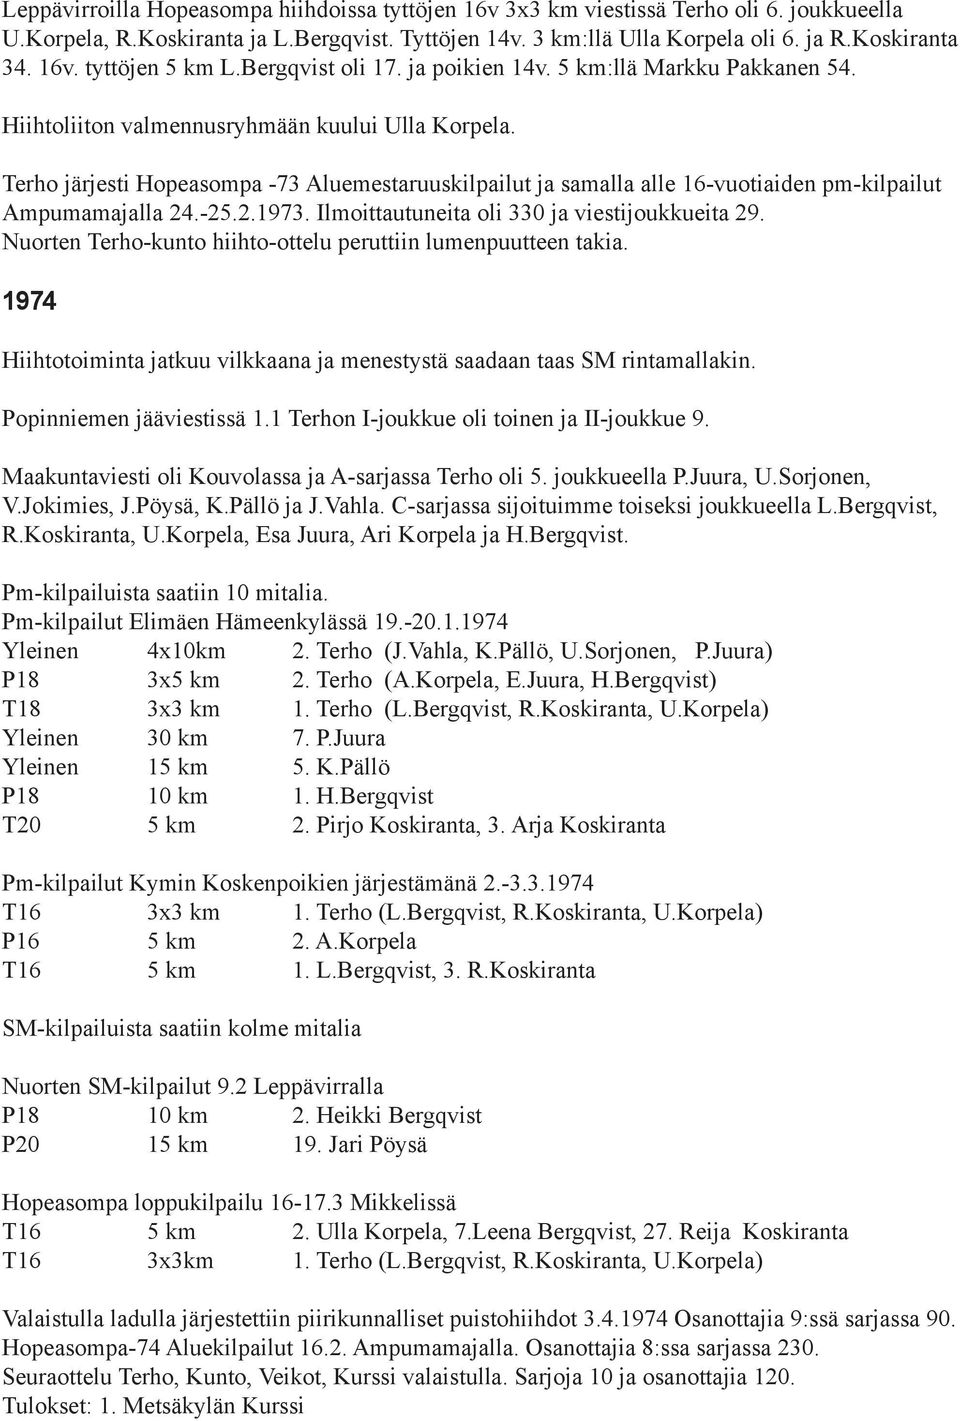 Terho järjesti Hopeasompa -73 Aluemestaruuskilpailut ja samalla alle 16-vuotiaiden pm-kilpailut Ampumamajalla 24.-25.2.1973. Ilmoittautuneita oli 330 ja viestijoukkueita 29.